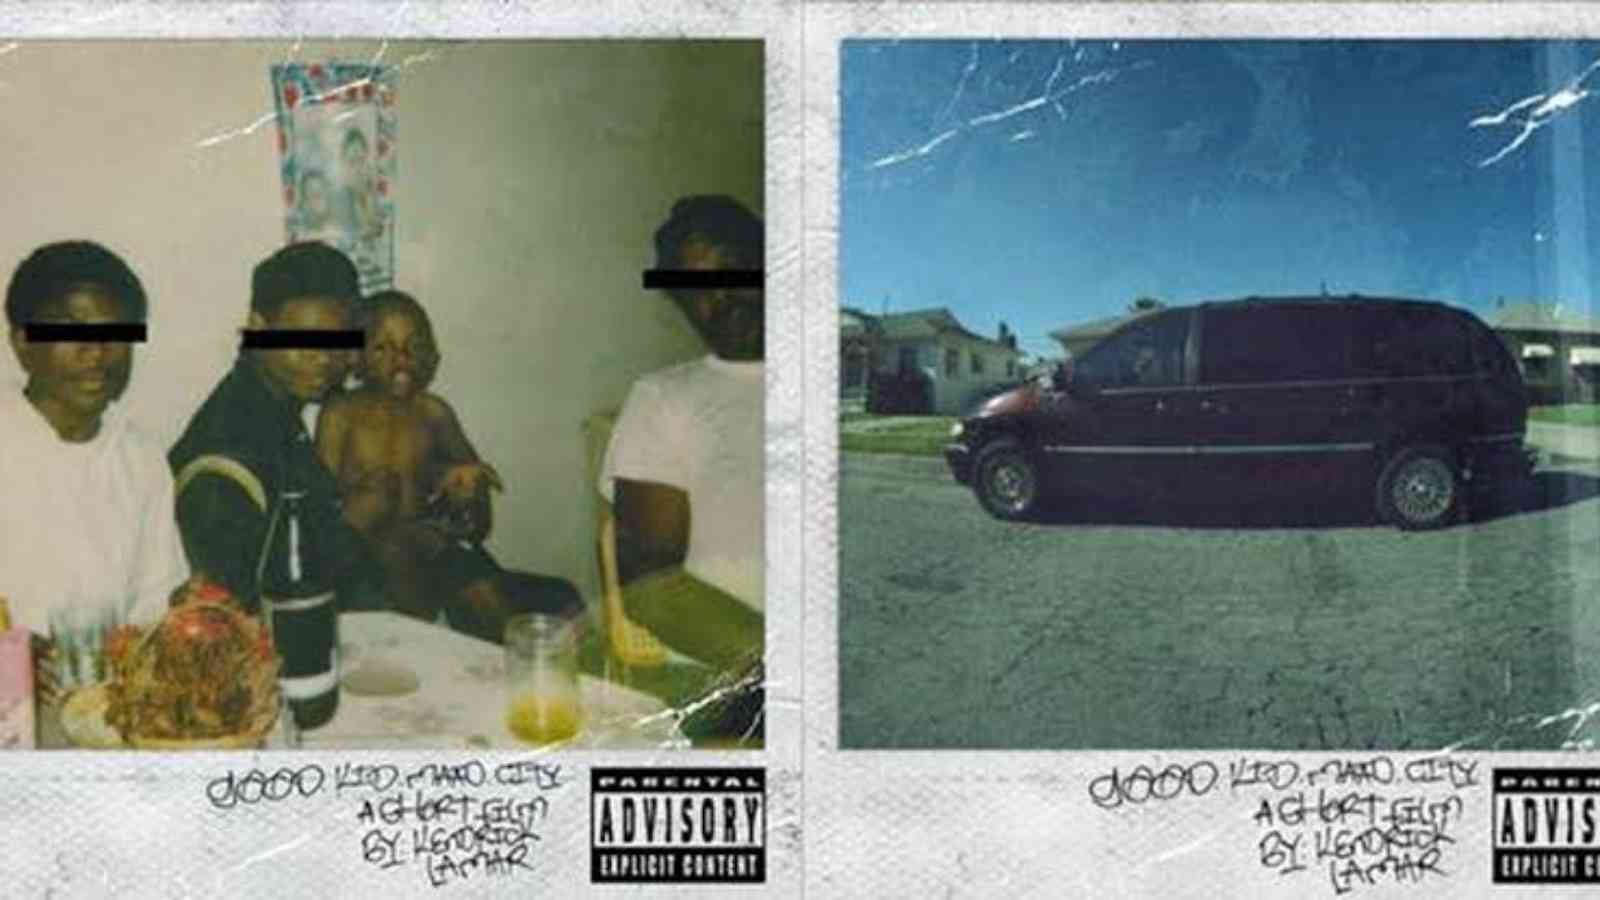 Kendrick Lamar's good kid m.A.A.d city